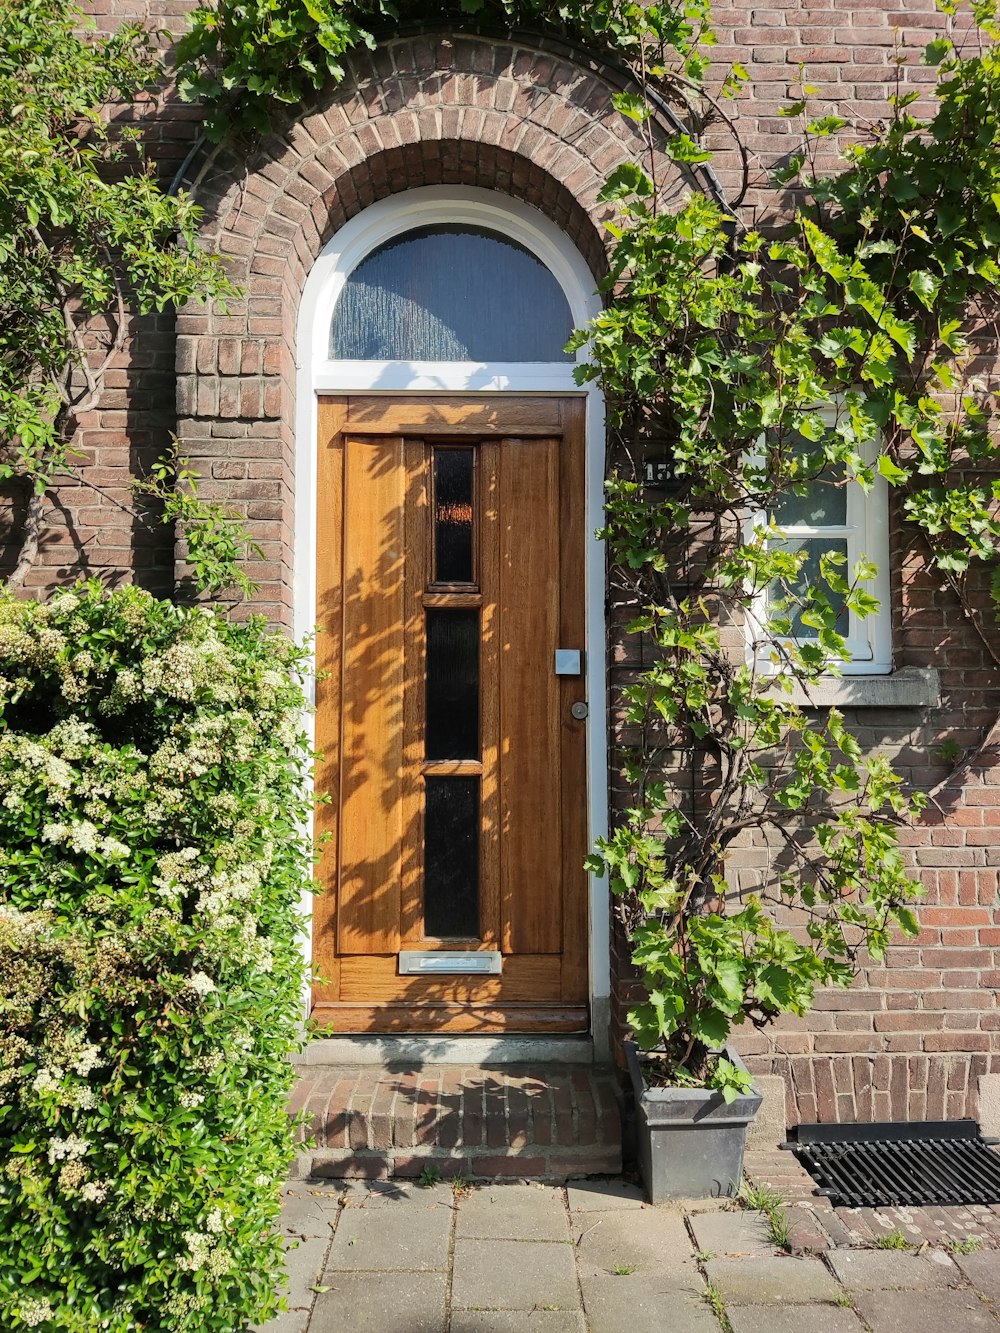 a wooden door in front of a brick building